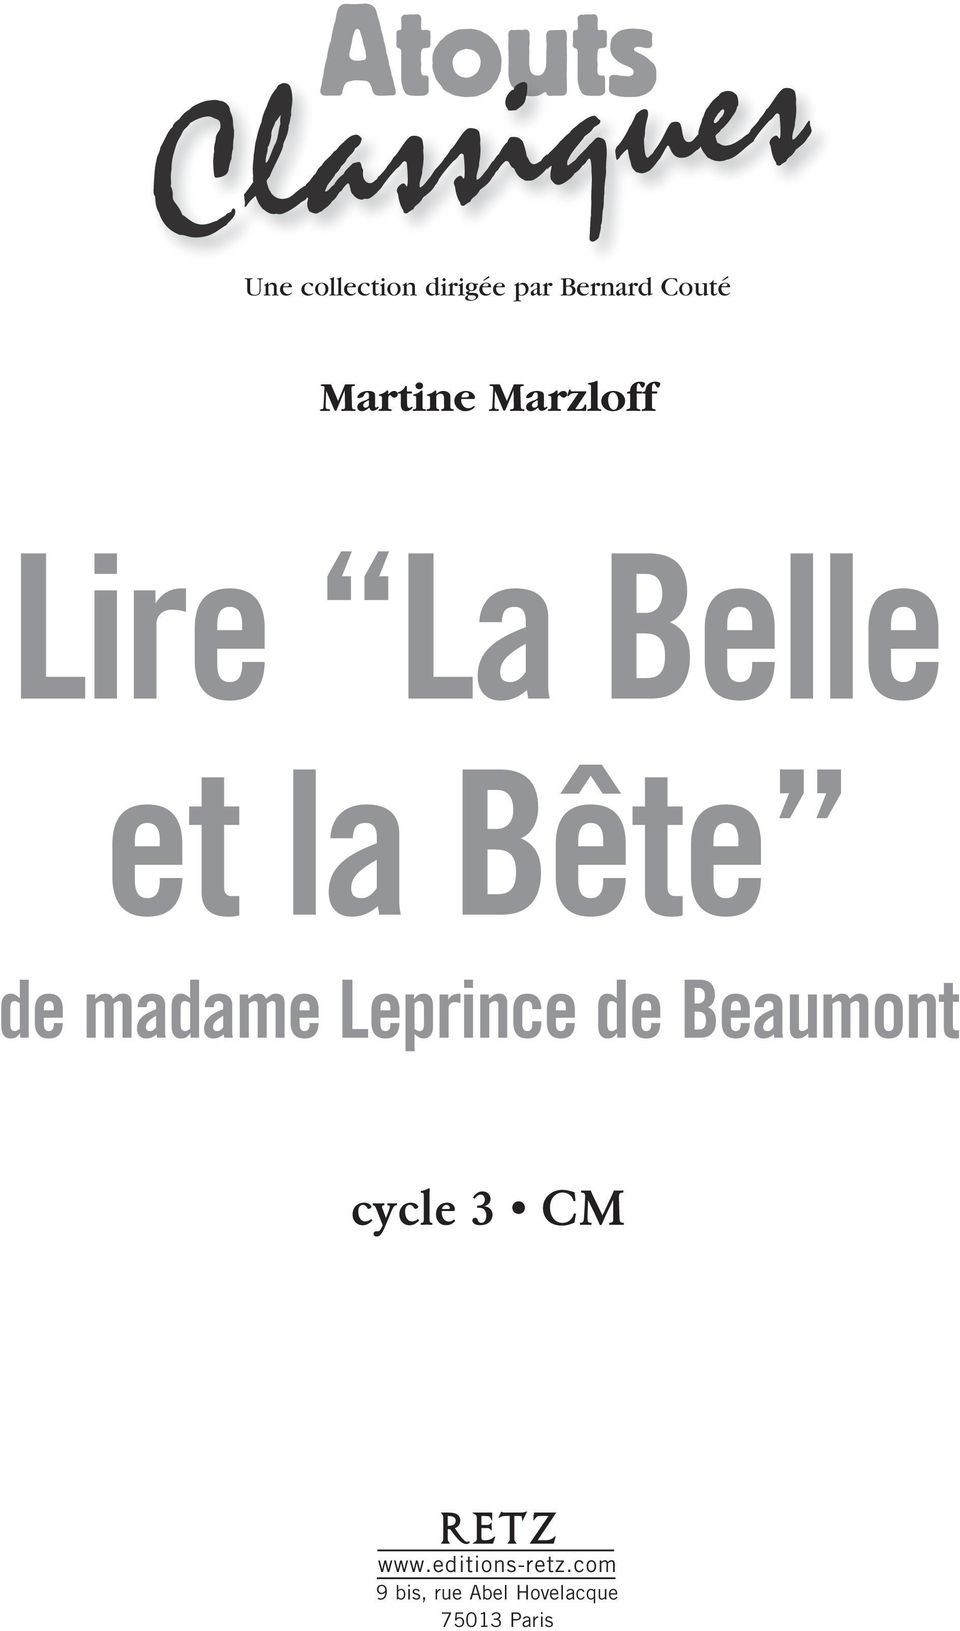 madame Leprince de Beaumont cycle 3 CM www.